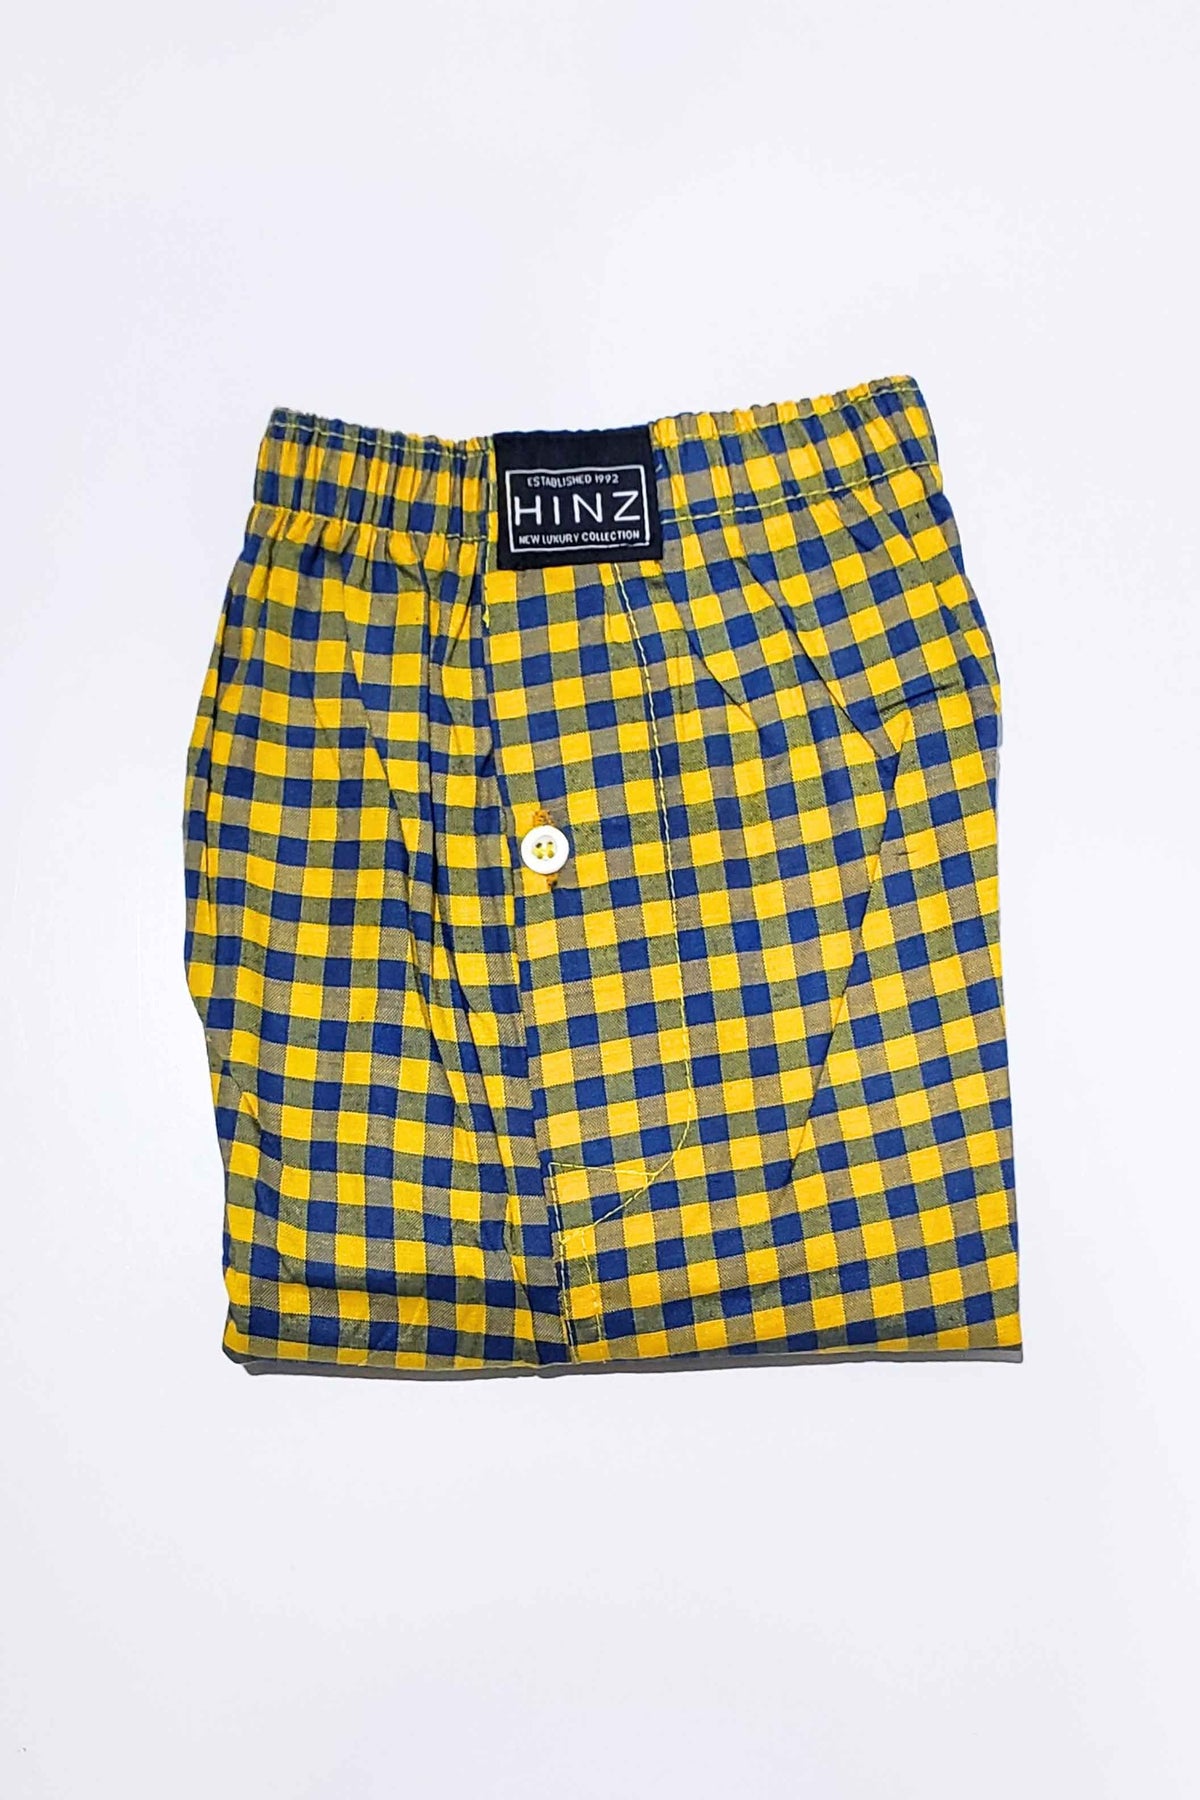 Cotton Boxer Shorts Check Design